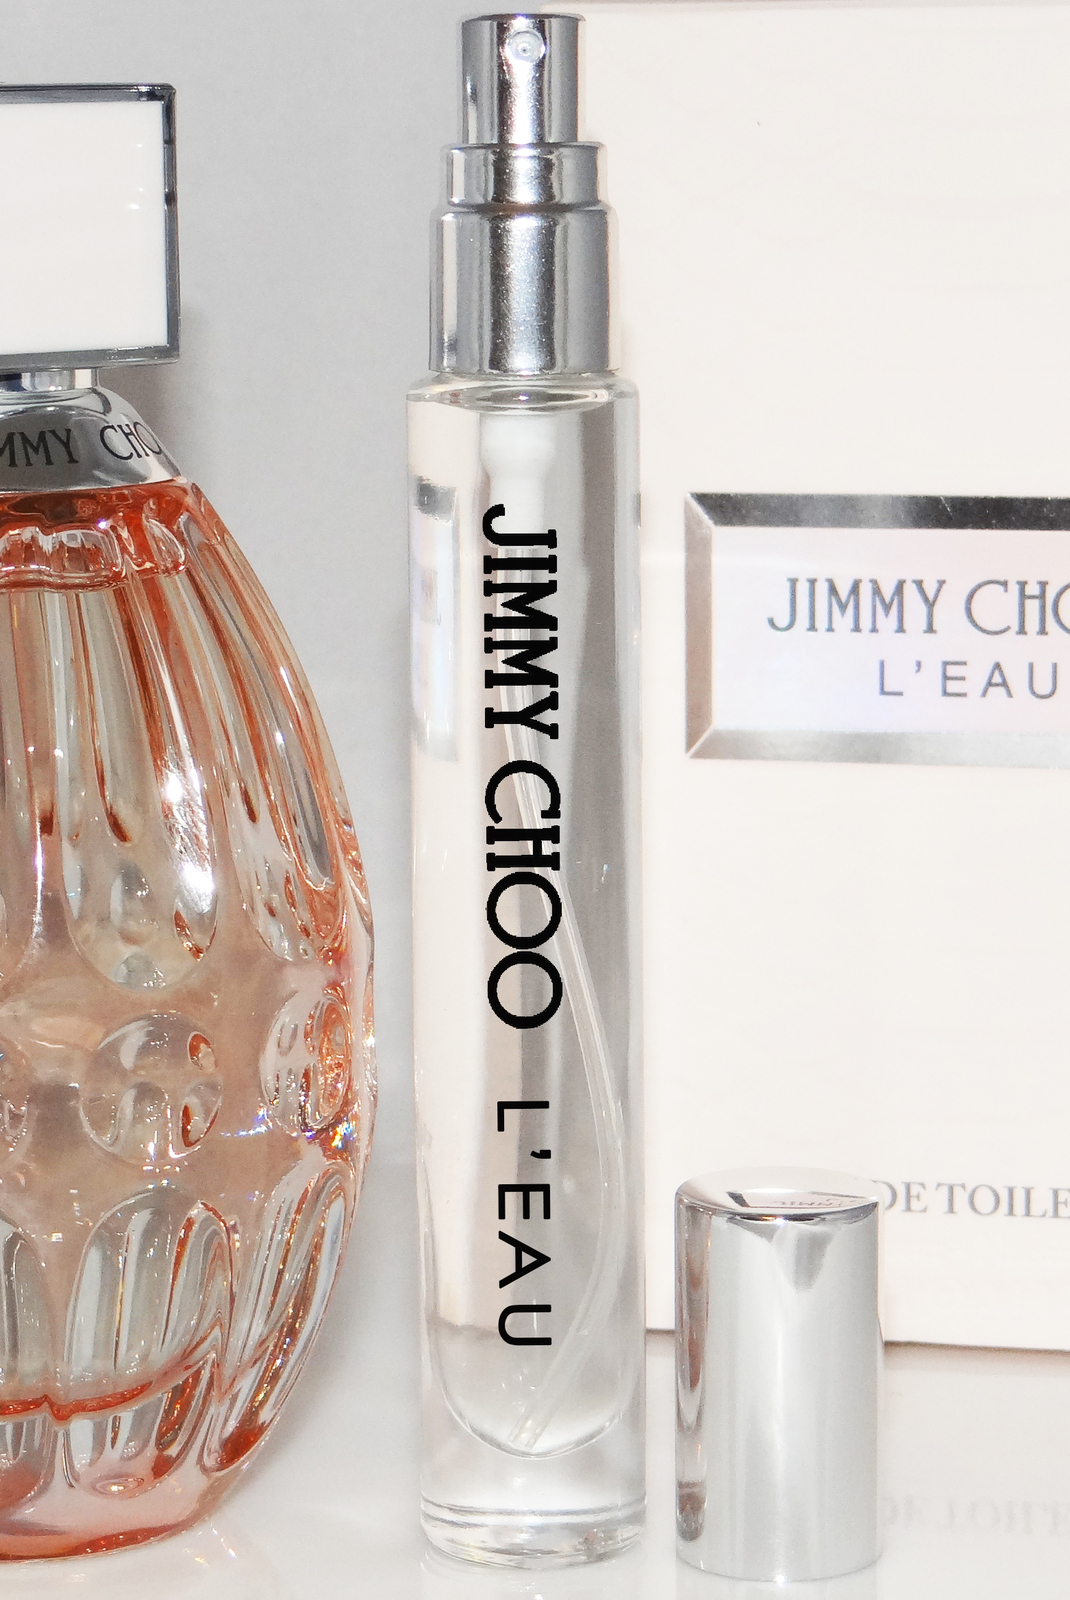 jimmy choo perfume 6ml price